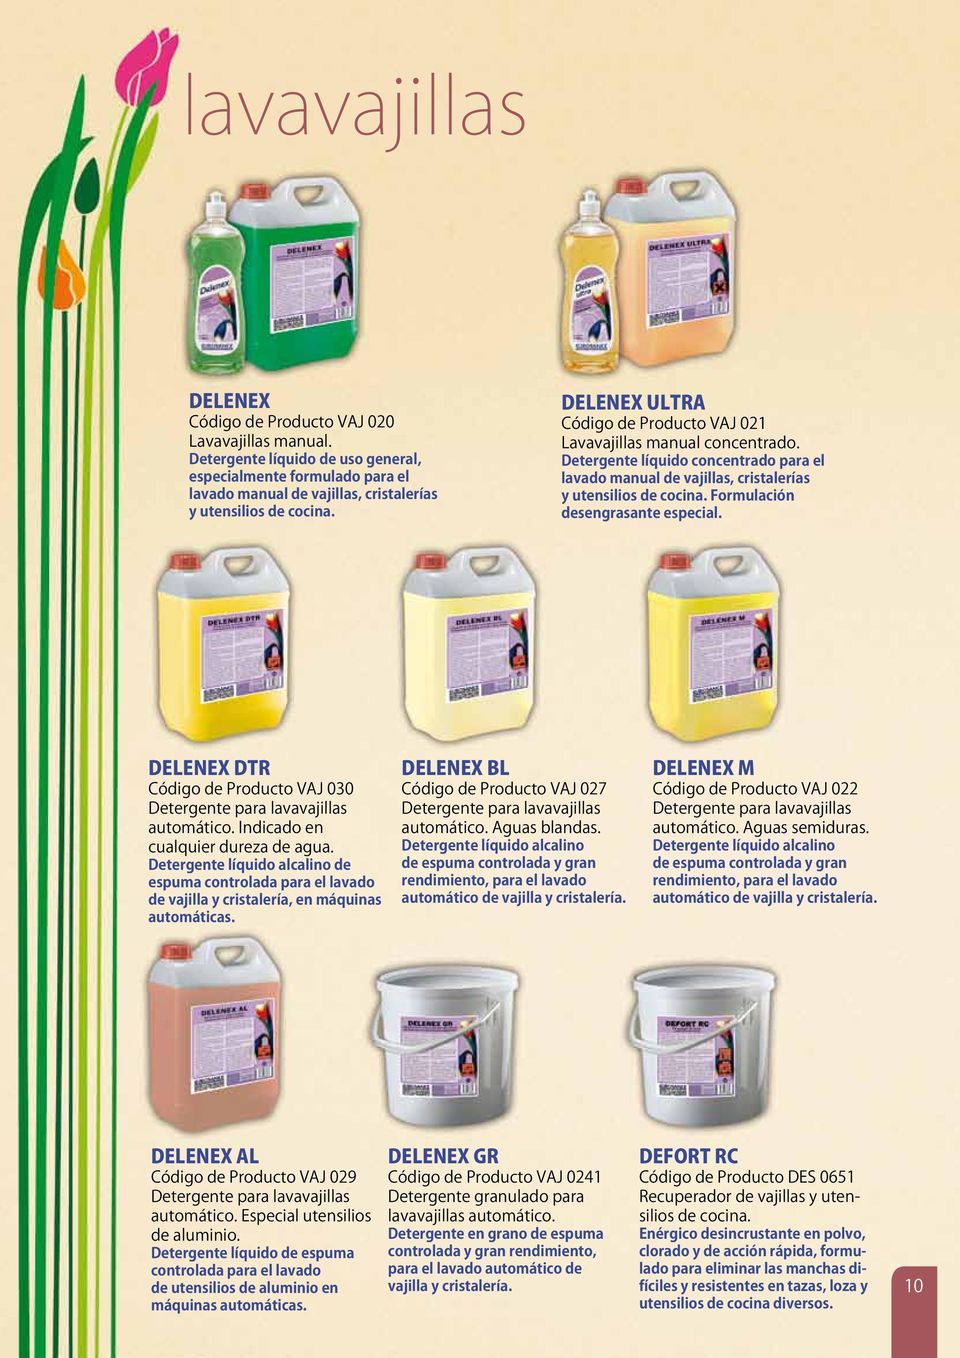 Formulación desengrasante especial. DELENEX DTR Código de Producto VAJ 030 Detergente para lavavajillas automático. Indicado en cualquier dureza de agua.